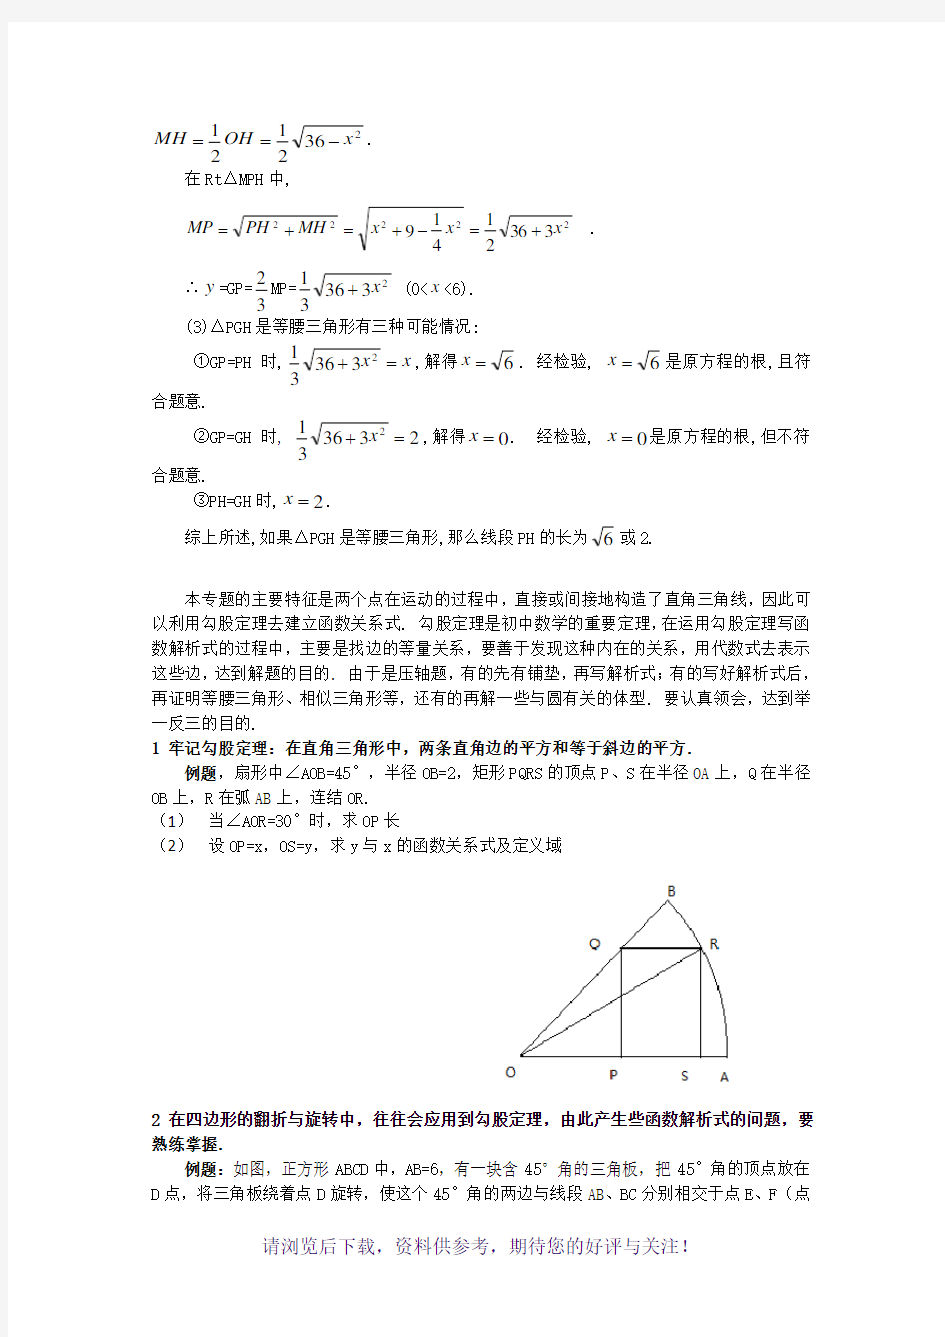 中考数学动点问题专题讲解(一)(建立动点问题的函数解析式)